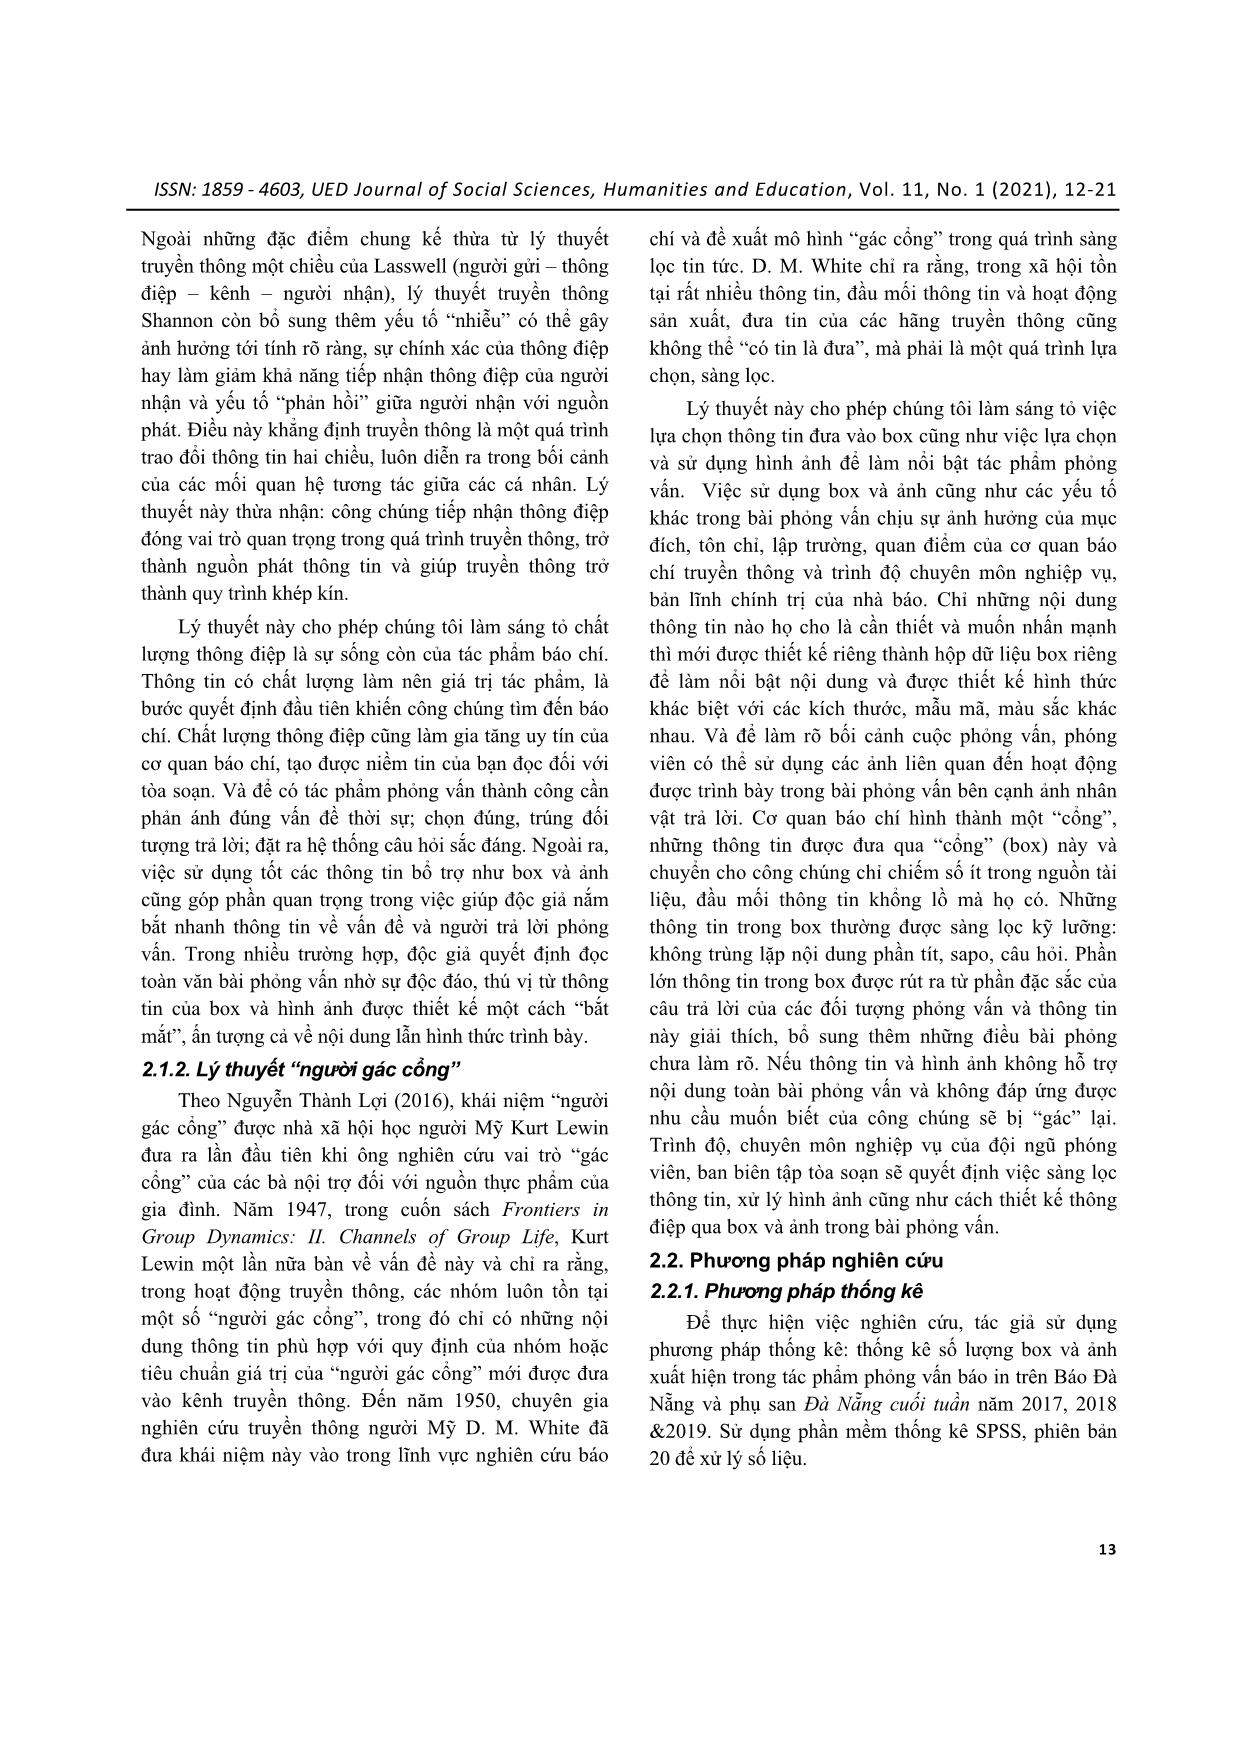 Thông tin bổ trợ ở box và ảnh trong tác phẩm phỏng vấn trên báo Đà Nẵng trang 2